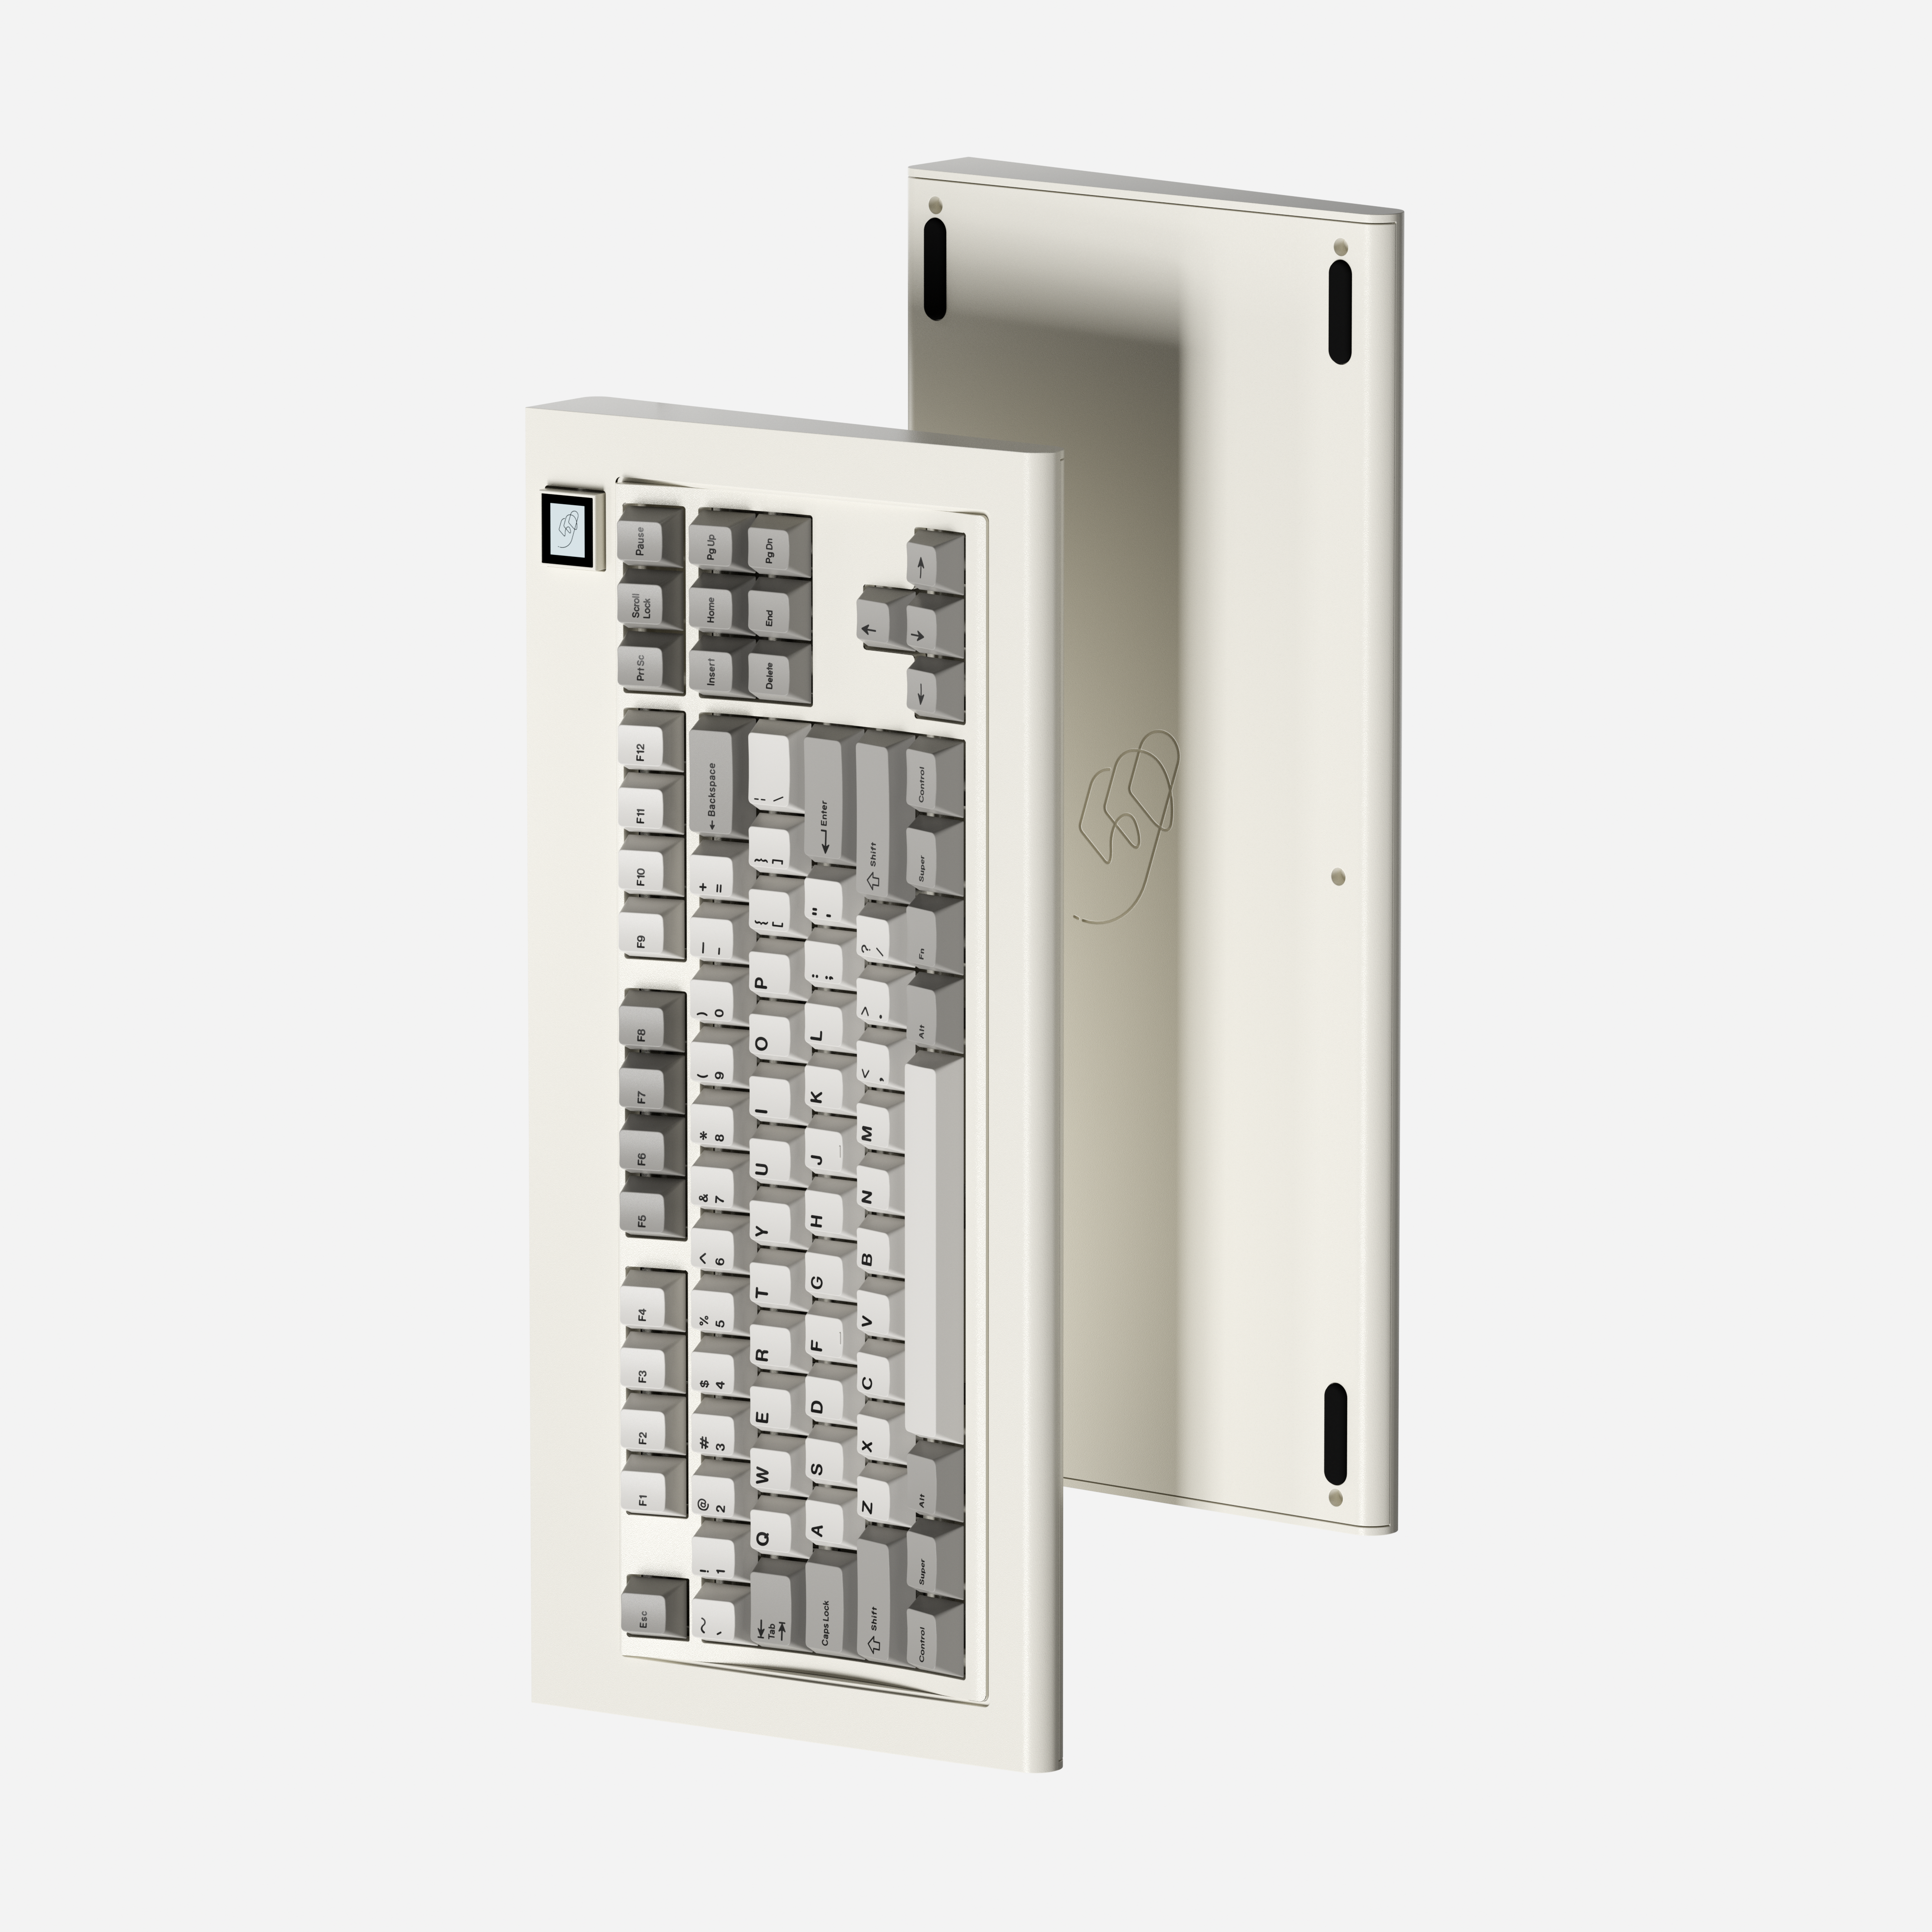 [Ended] Model OLED Keyboard Kit